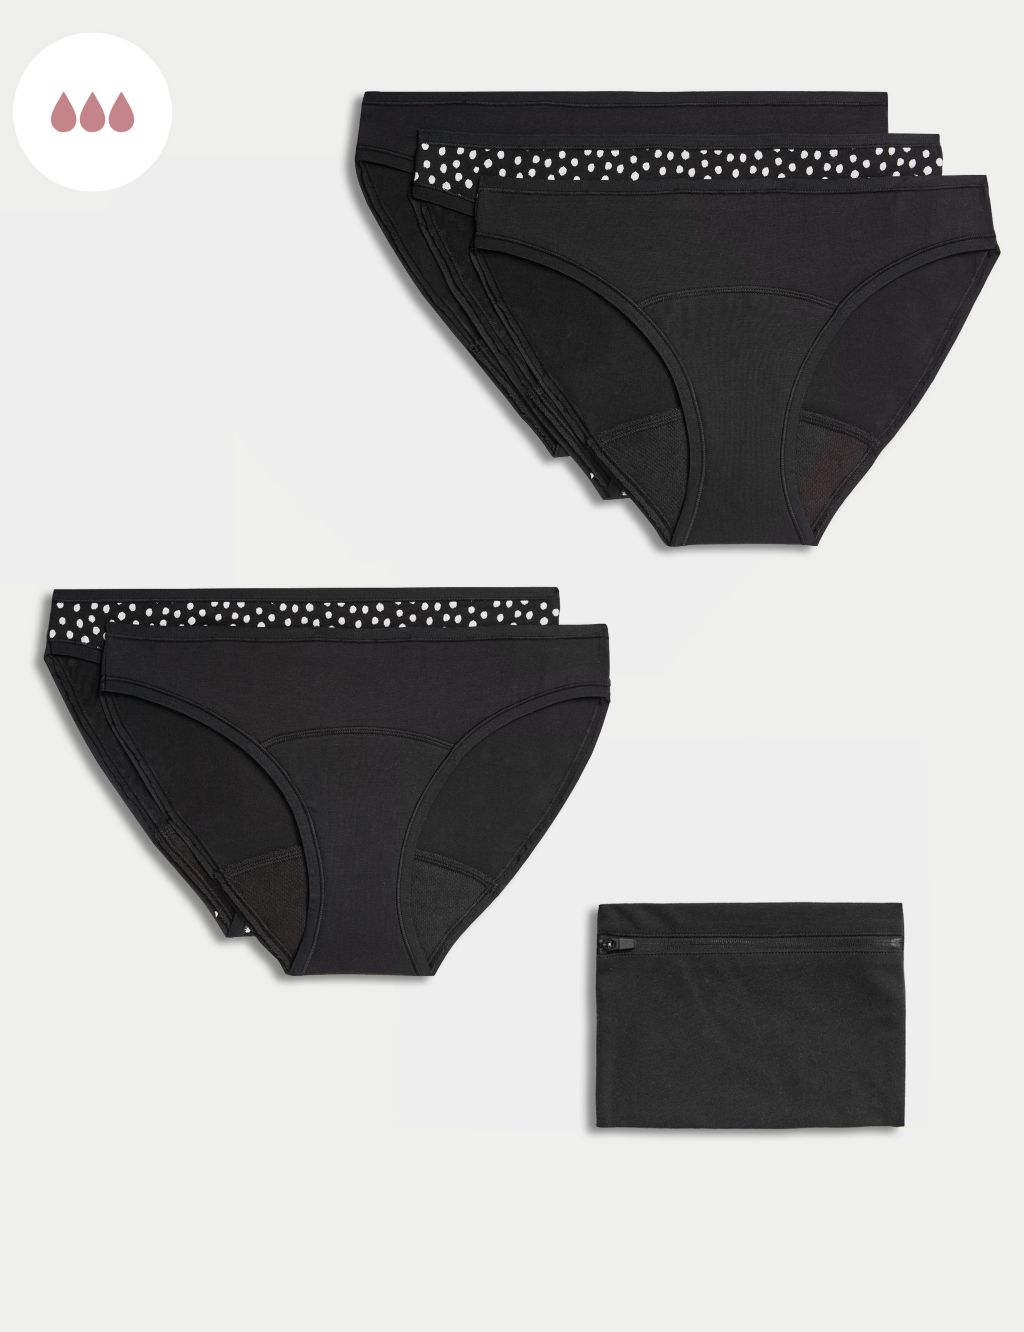 Period Underwear Bundle  DIVA™ Disc and Period Underwear Bundle